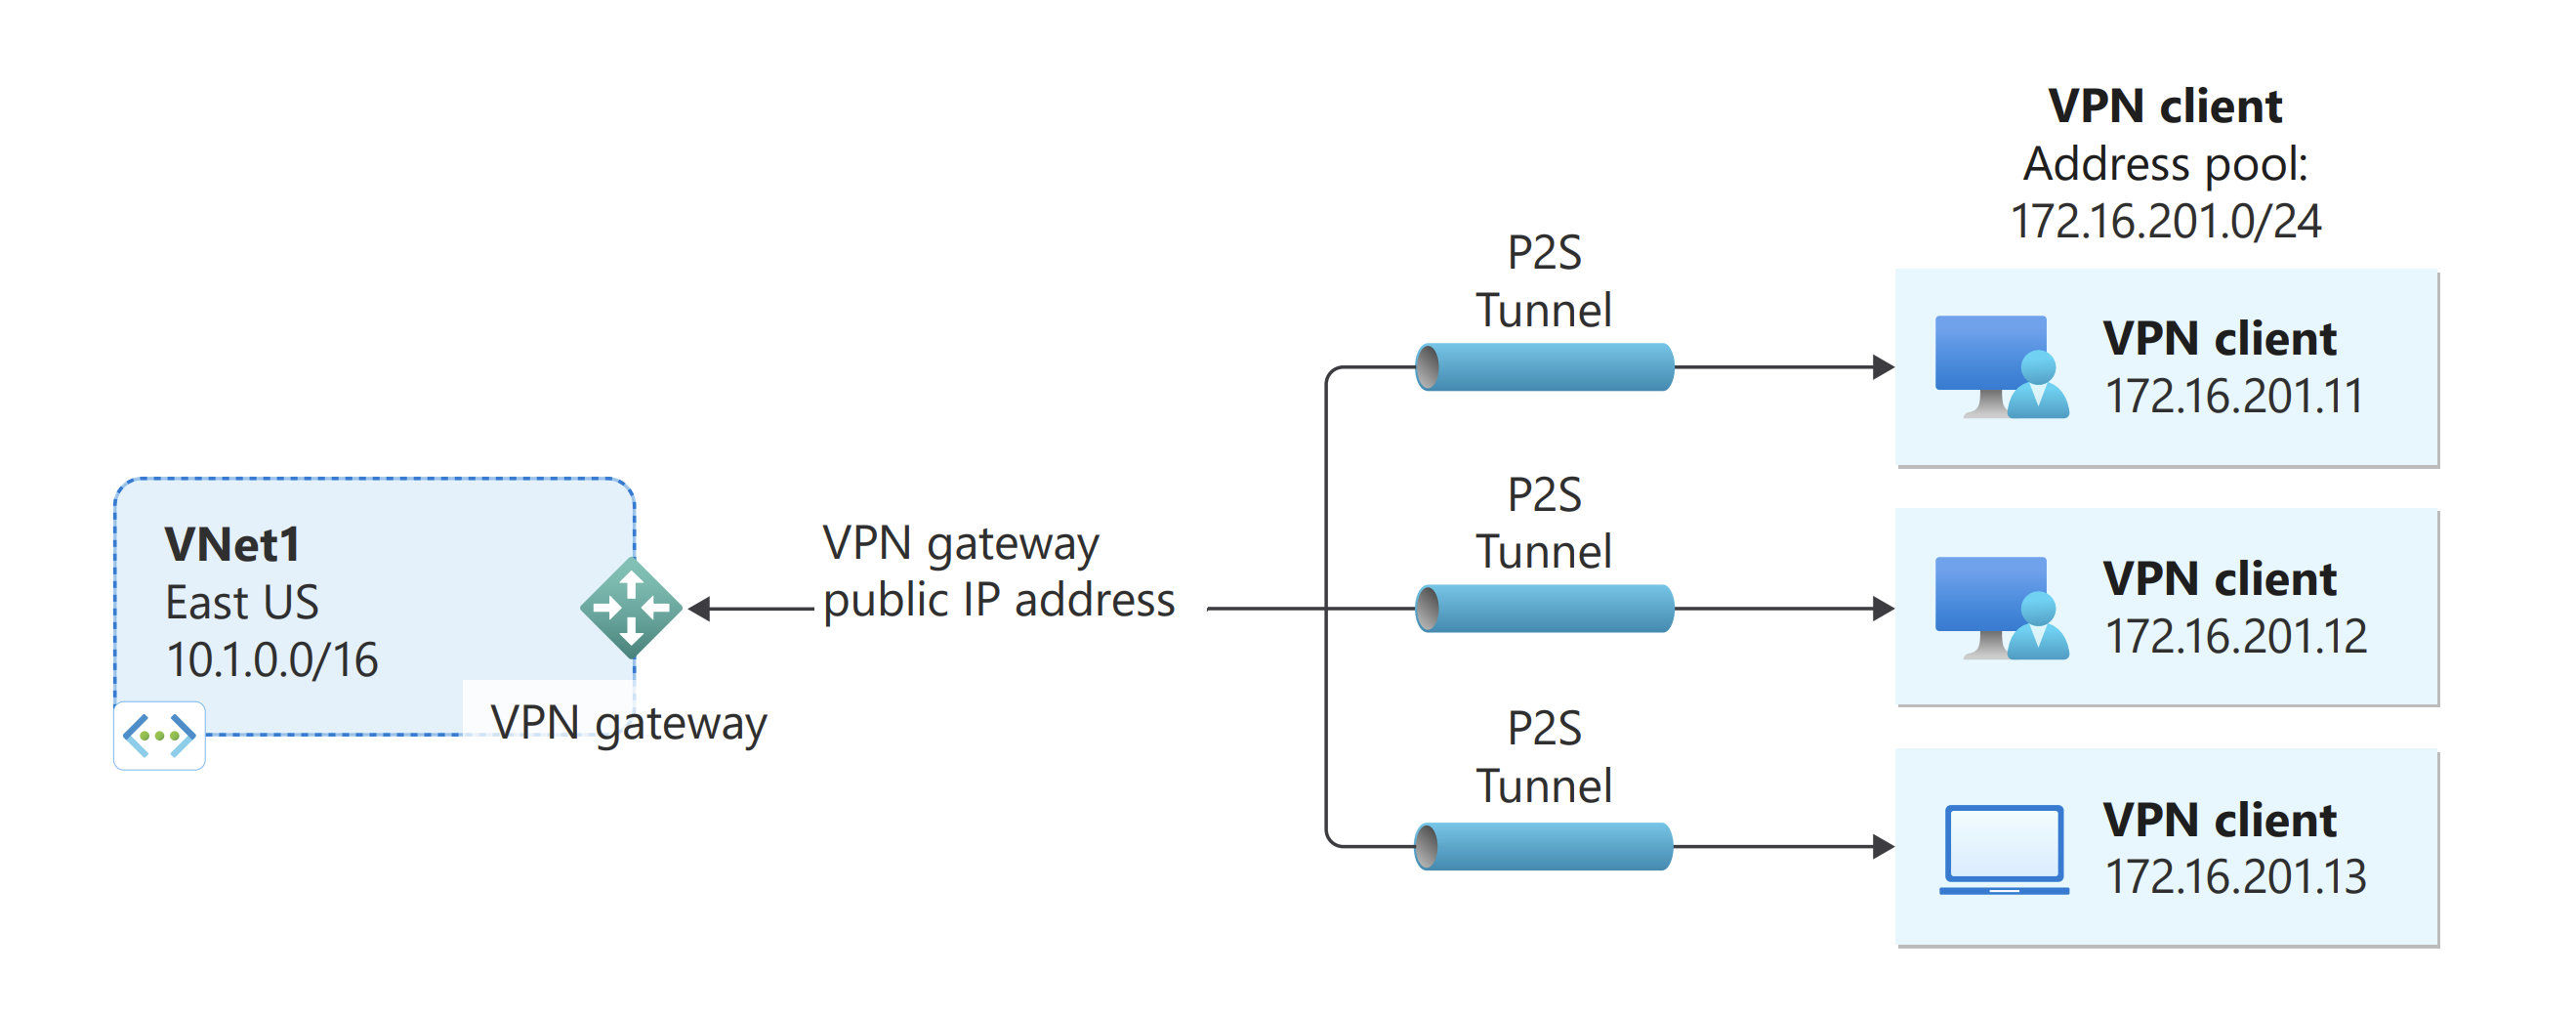 컴퓨터에서 Azure VNet으로 연결하는 방법을 보여주는 지점 및 사이트 간 연결의 다이어그램